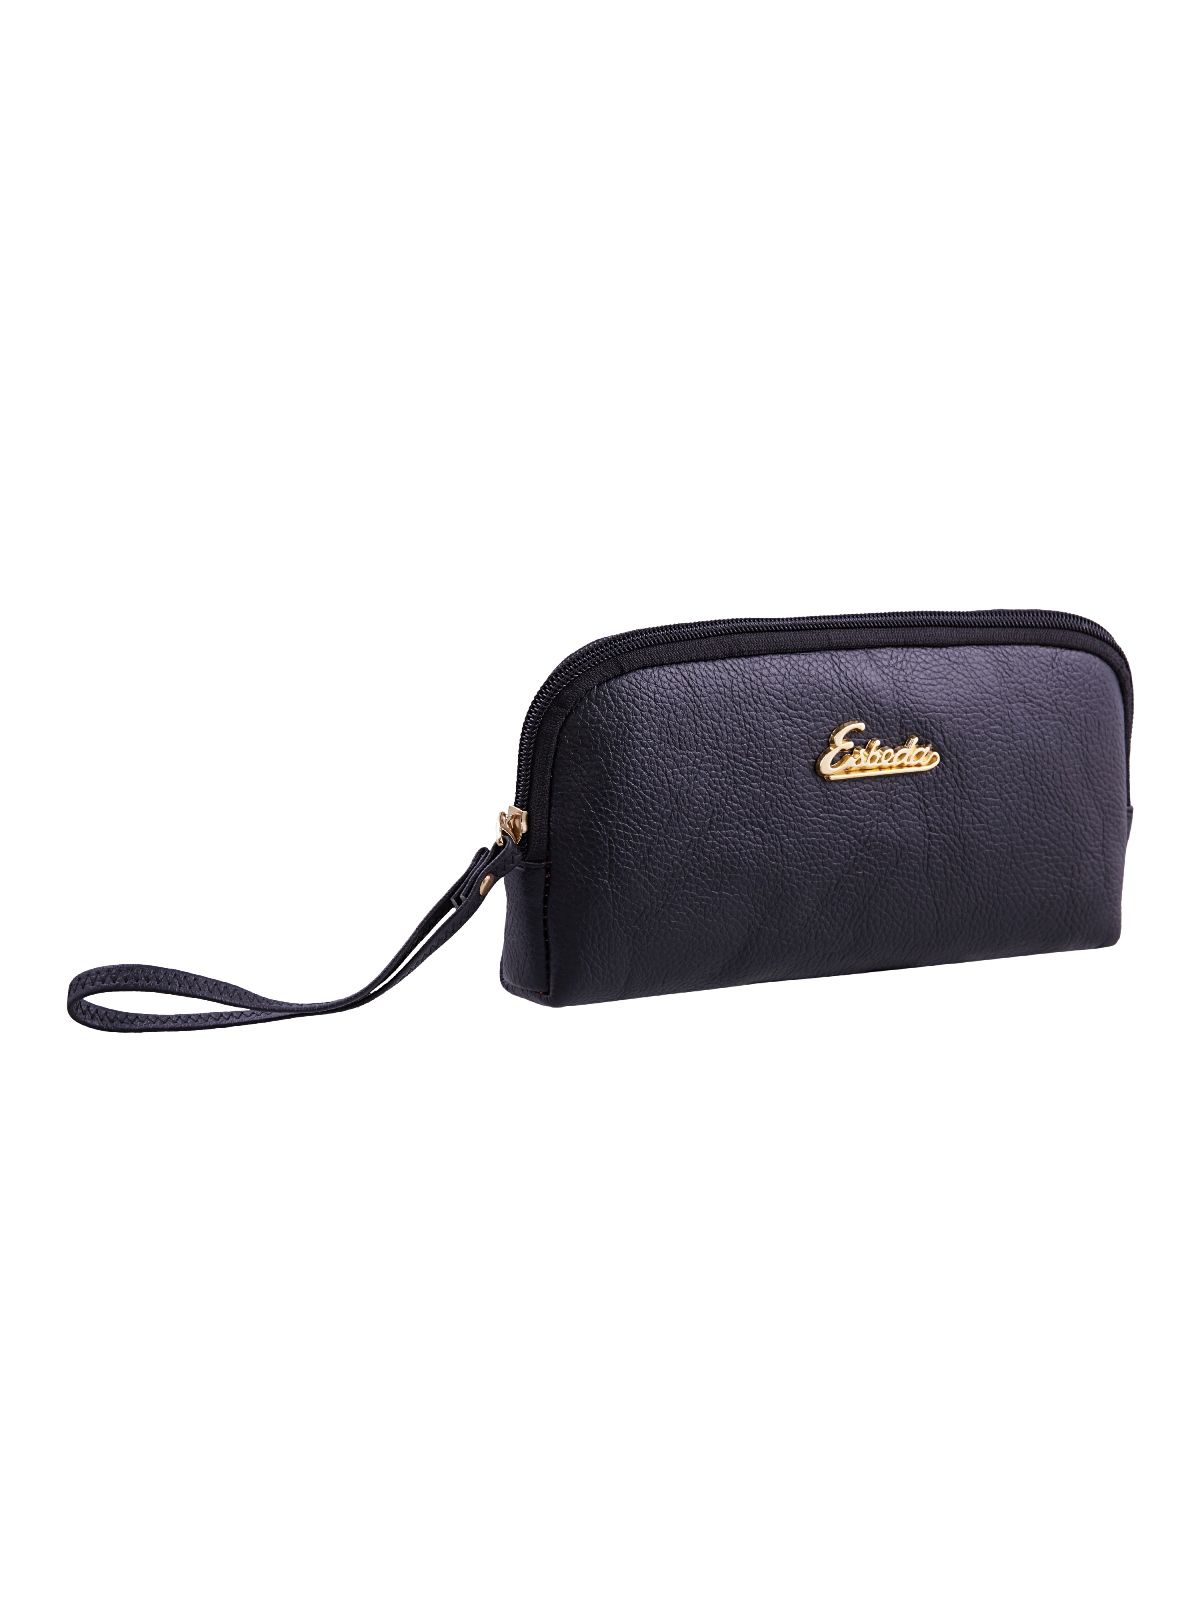 Buy ESBEDA Navy Blue Colour Solid Croco Small Handbag For Women at Amazon.in